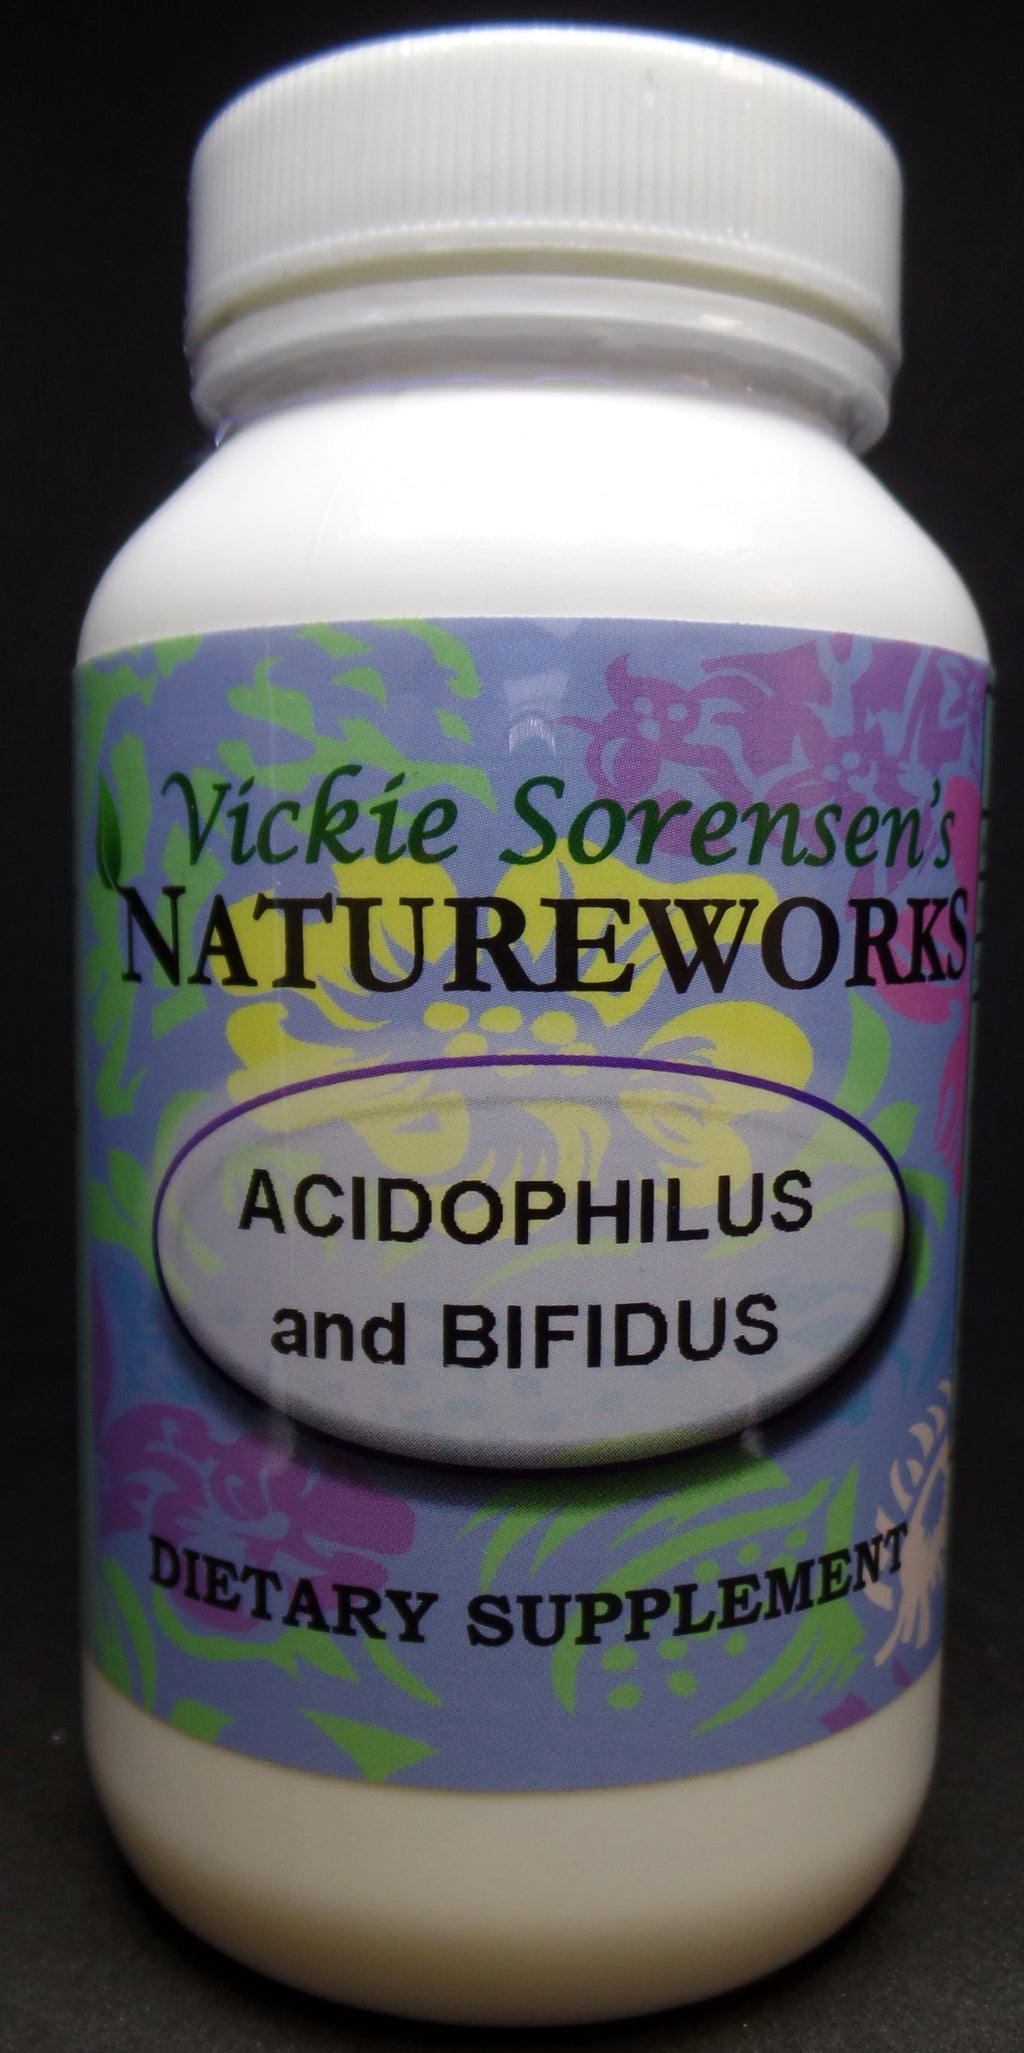 Acidophilus and Bifidus